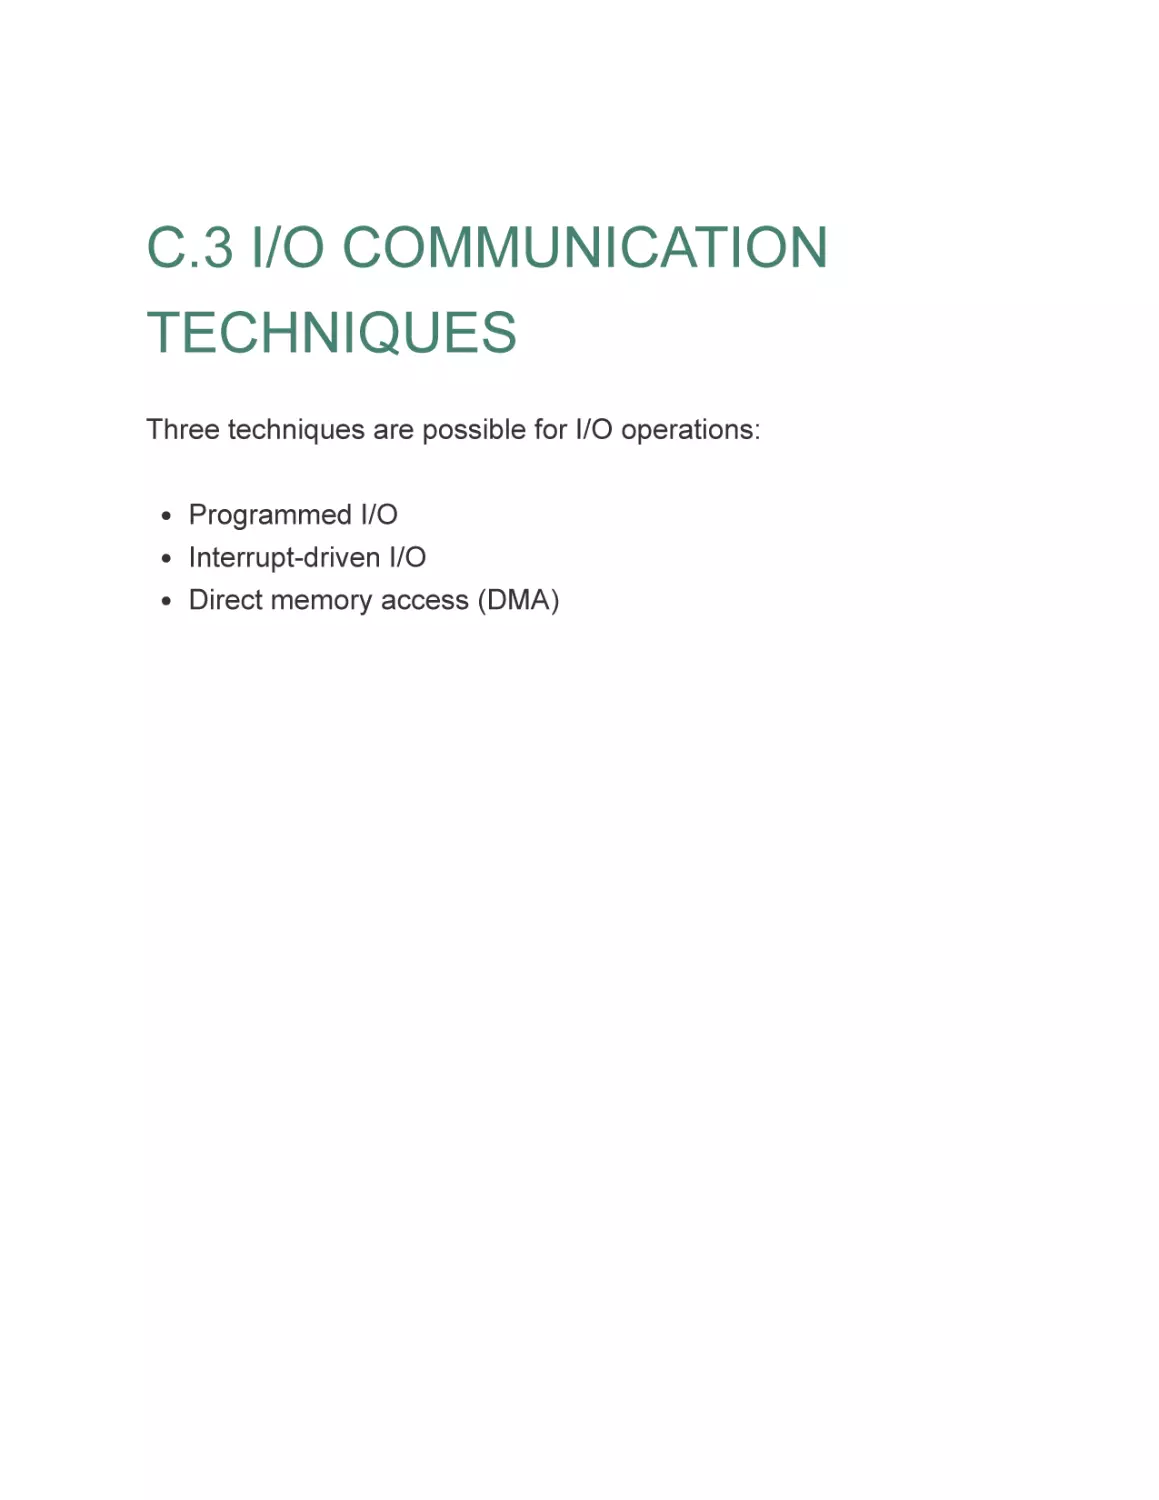 C.3 I/O COMMUNICATION TECHNIQUES